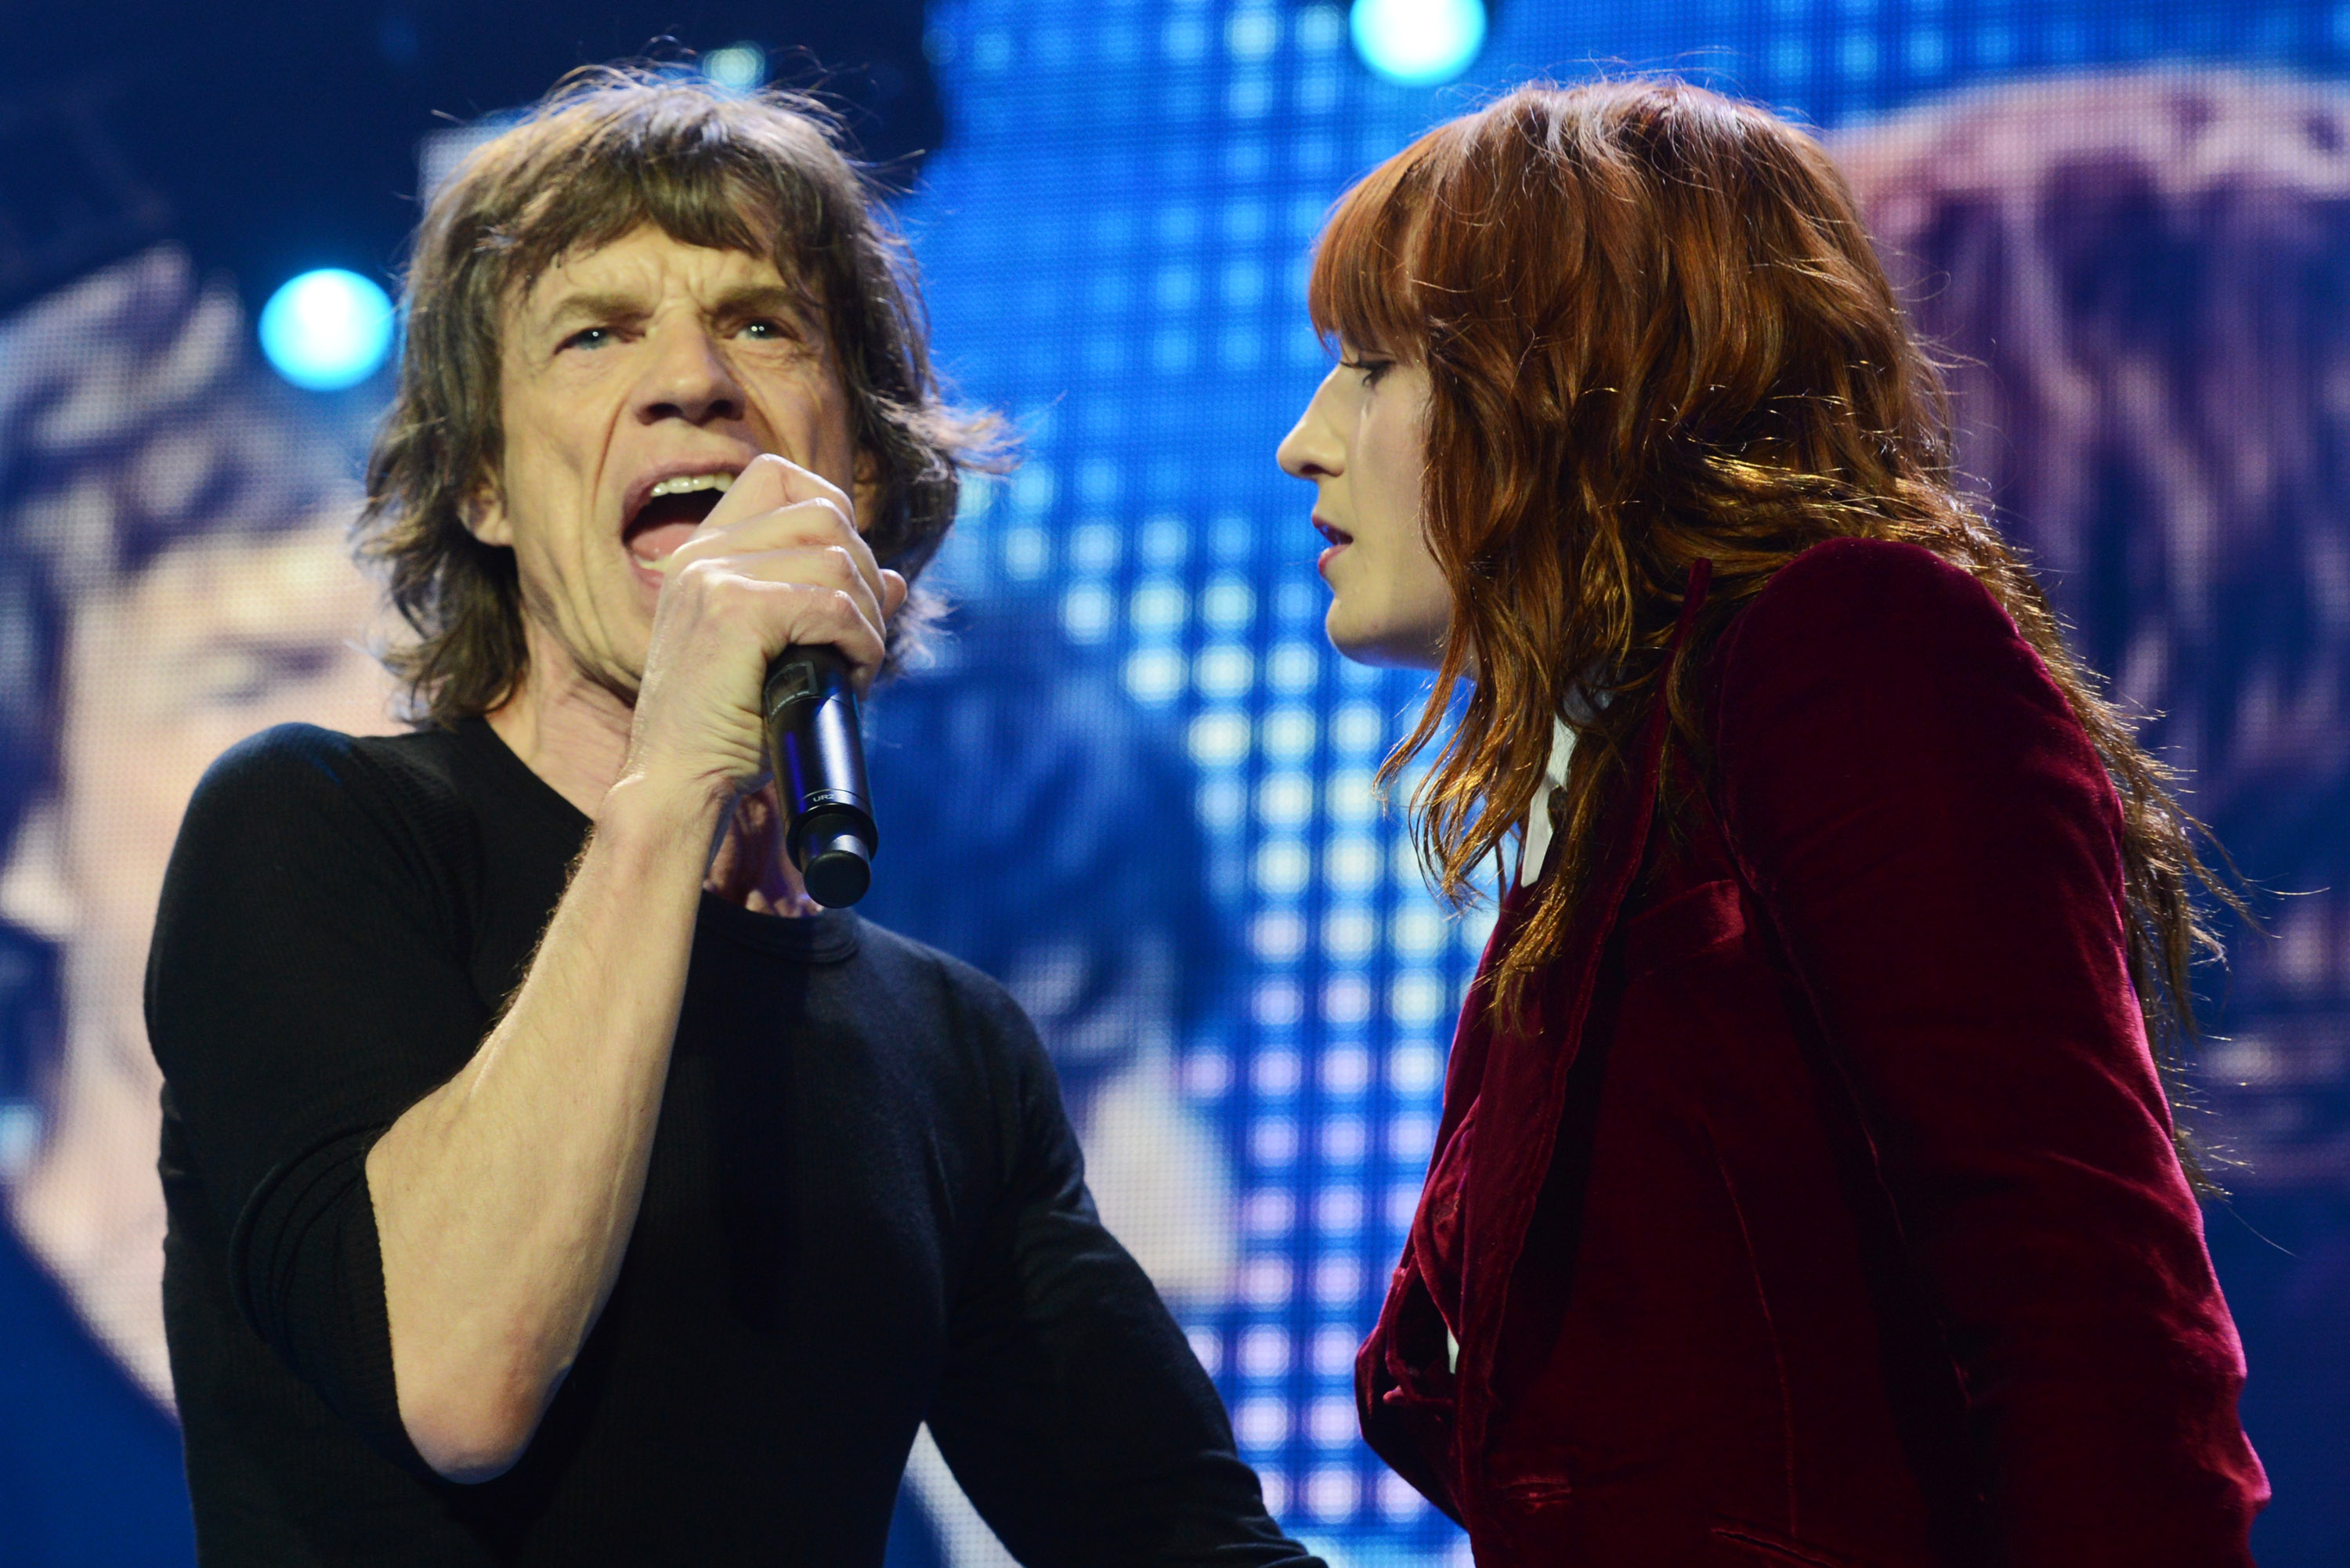 Sangen schon einmal zusammen: Mick Jagger von den Rolling Stones live mit Florence Welch in London am 29. November 2012